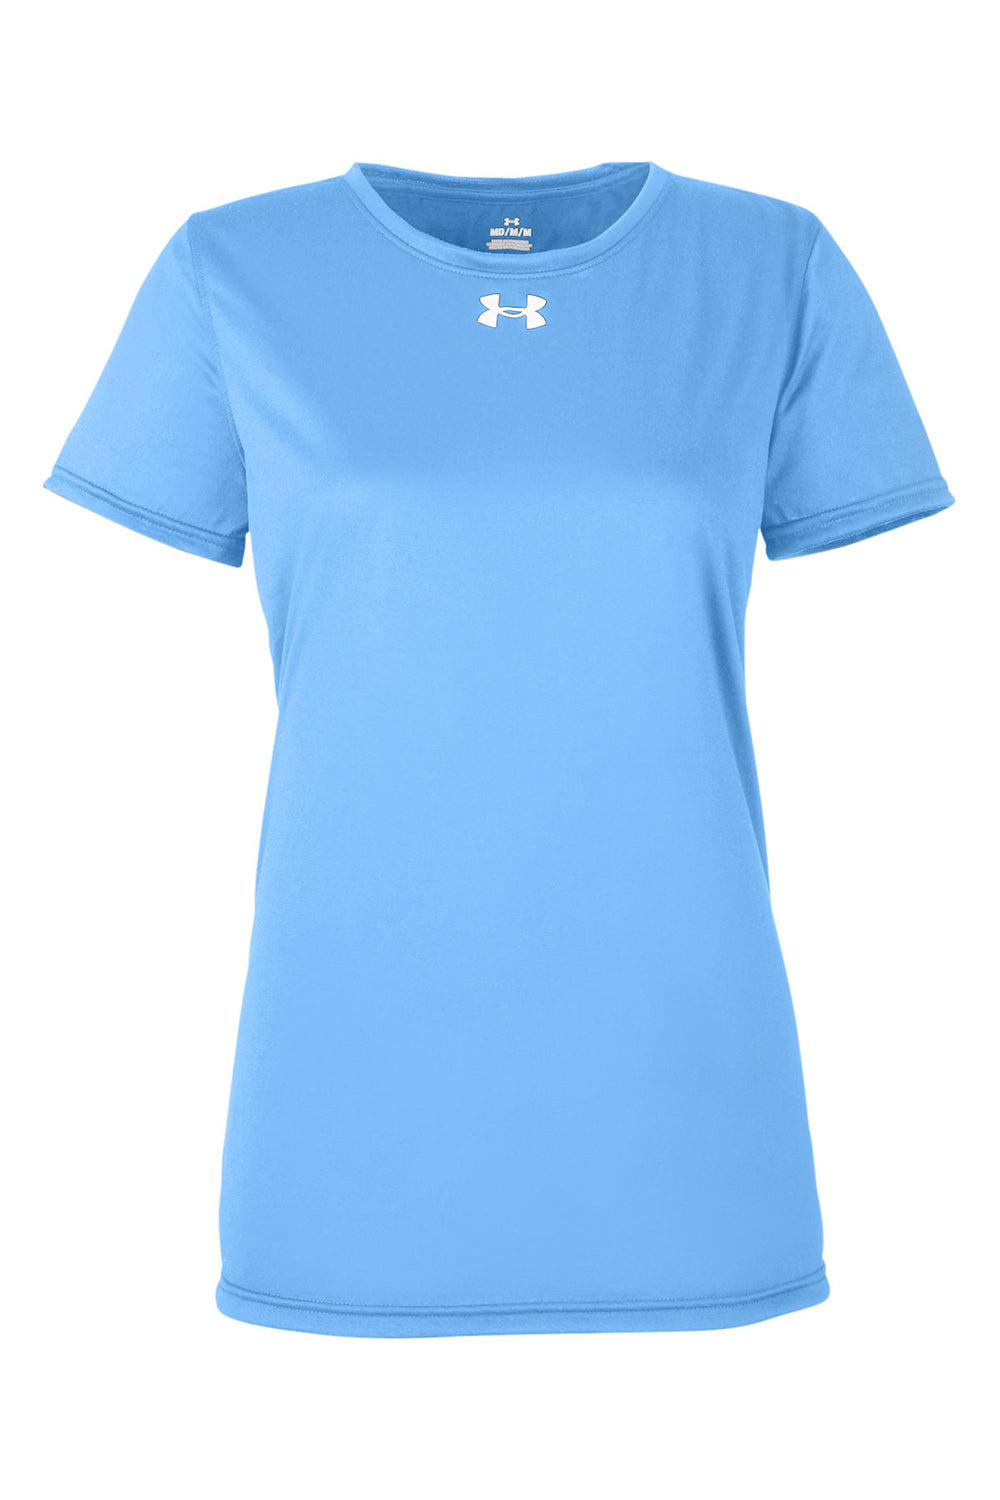 Under Armour 1376847 Womens Team Tech Moisture Wicking Short Sleeve Crewneck T-Shirt Carolina Blue Flat Front